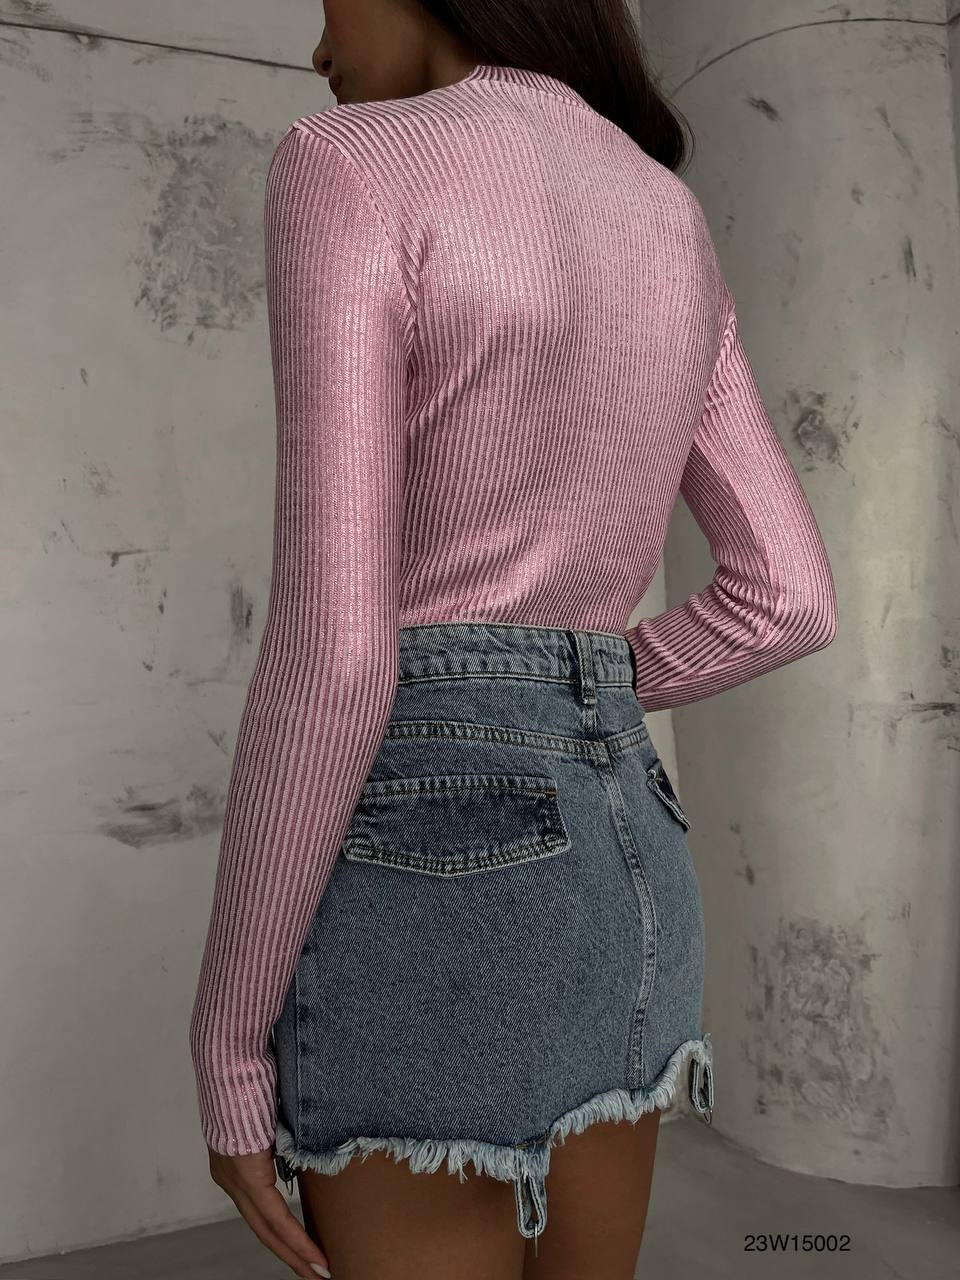 Дамска блуза Marie Pink  https://bvseductive.com/products/дамска-блуза-marie-pink  ефектна блуза в розов цвят втален модел, подчертаващ фигурата с дълъг ръкав и поло яка красиво предложение за Вашата визия